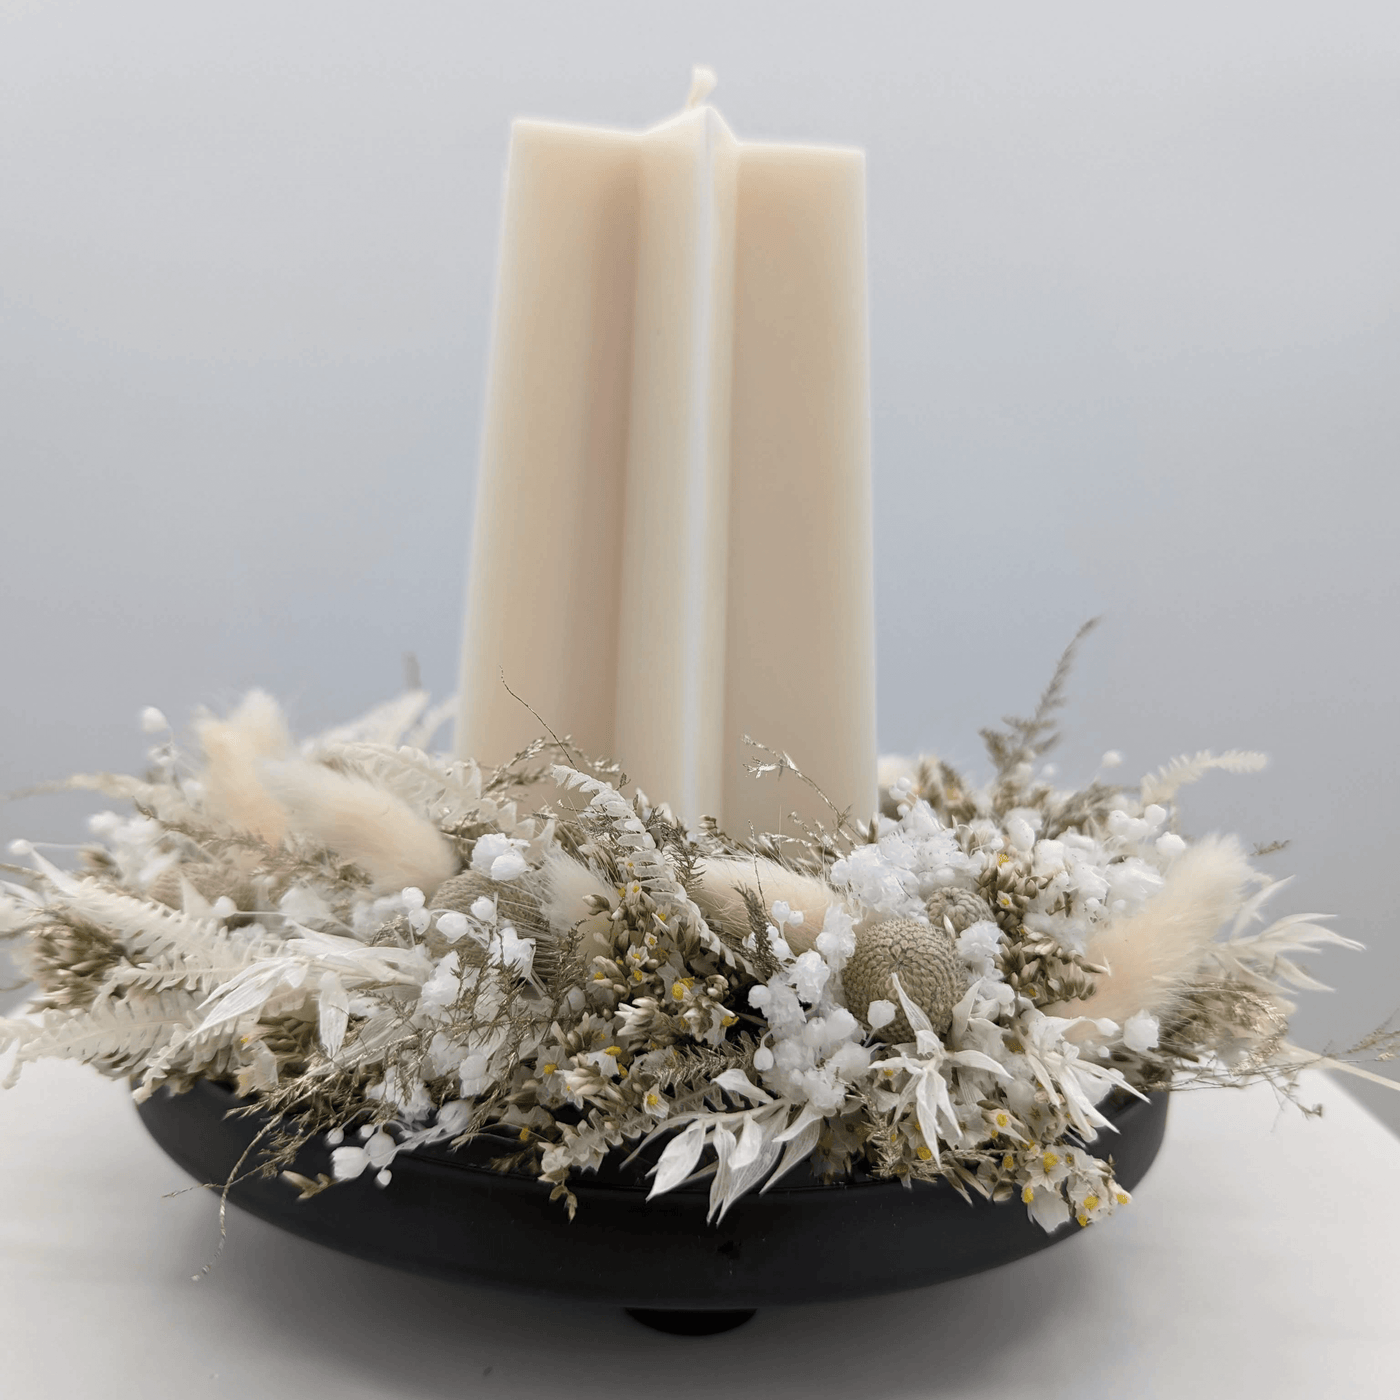 Silberne Festlichkeit: Trockenblumen-Adventskranz in Weiß und Silber